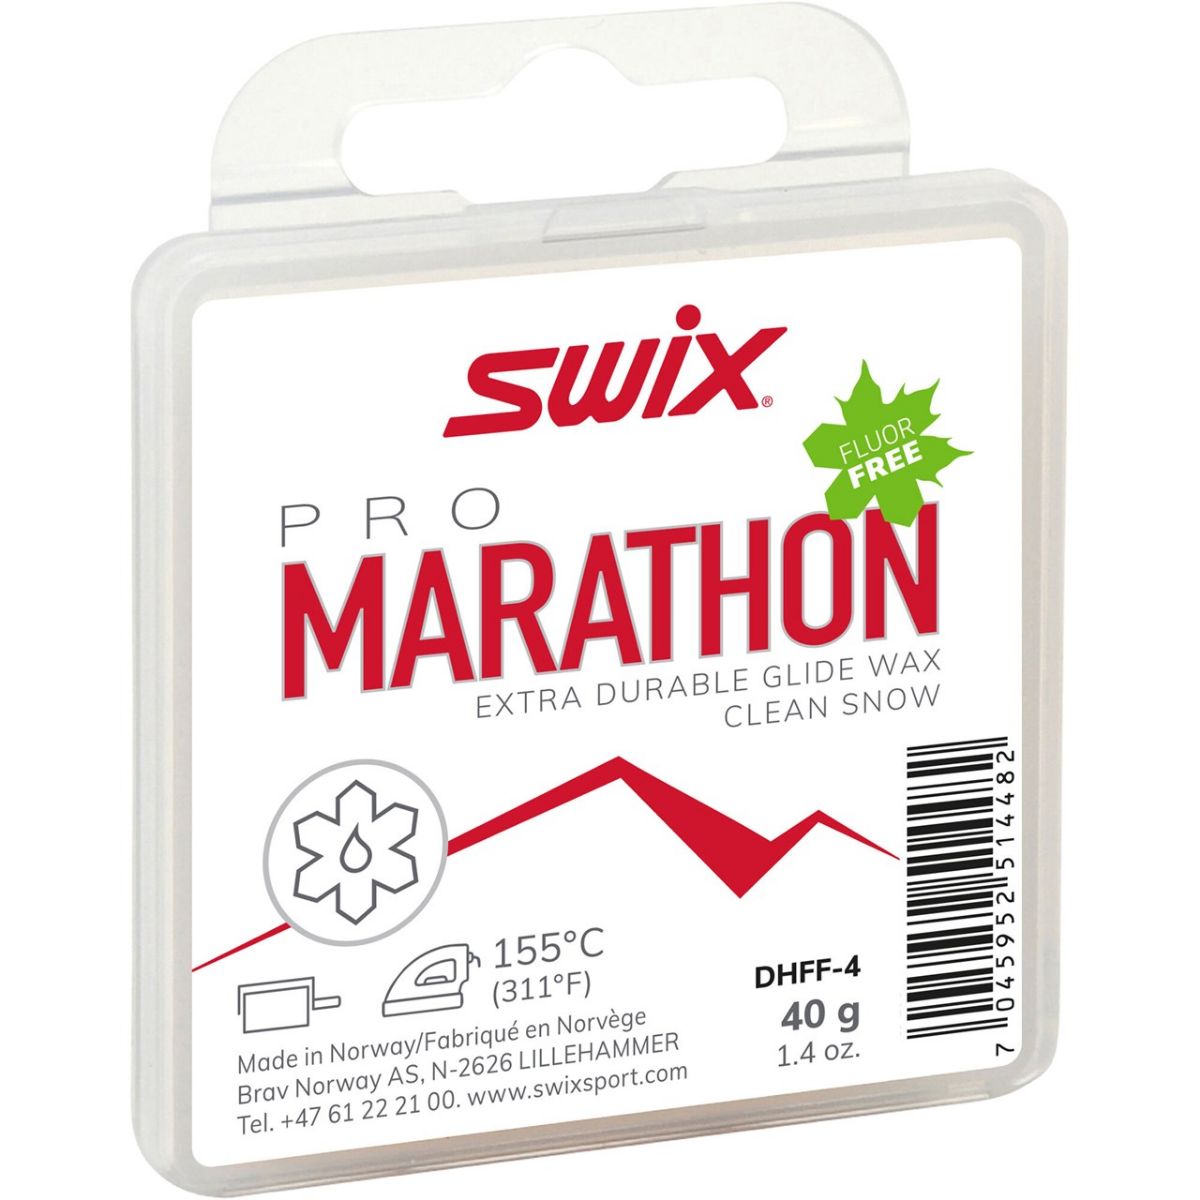 swix-marathon-fluor-free-hvit-glider-40g